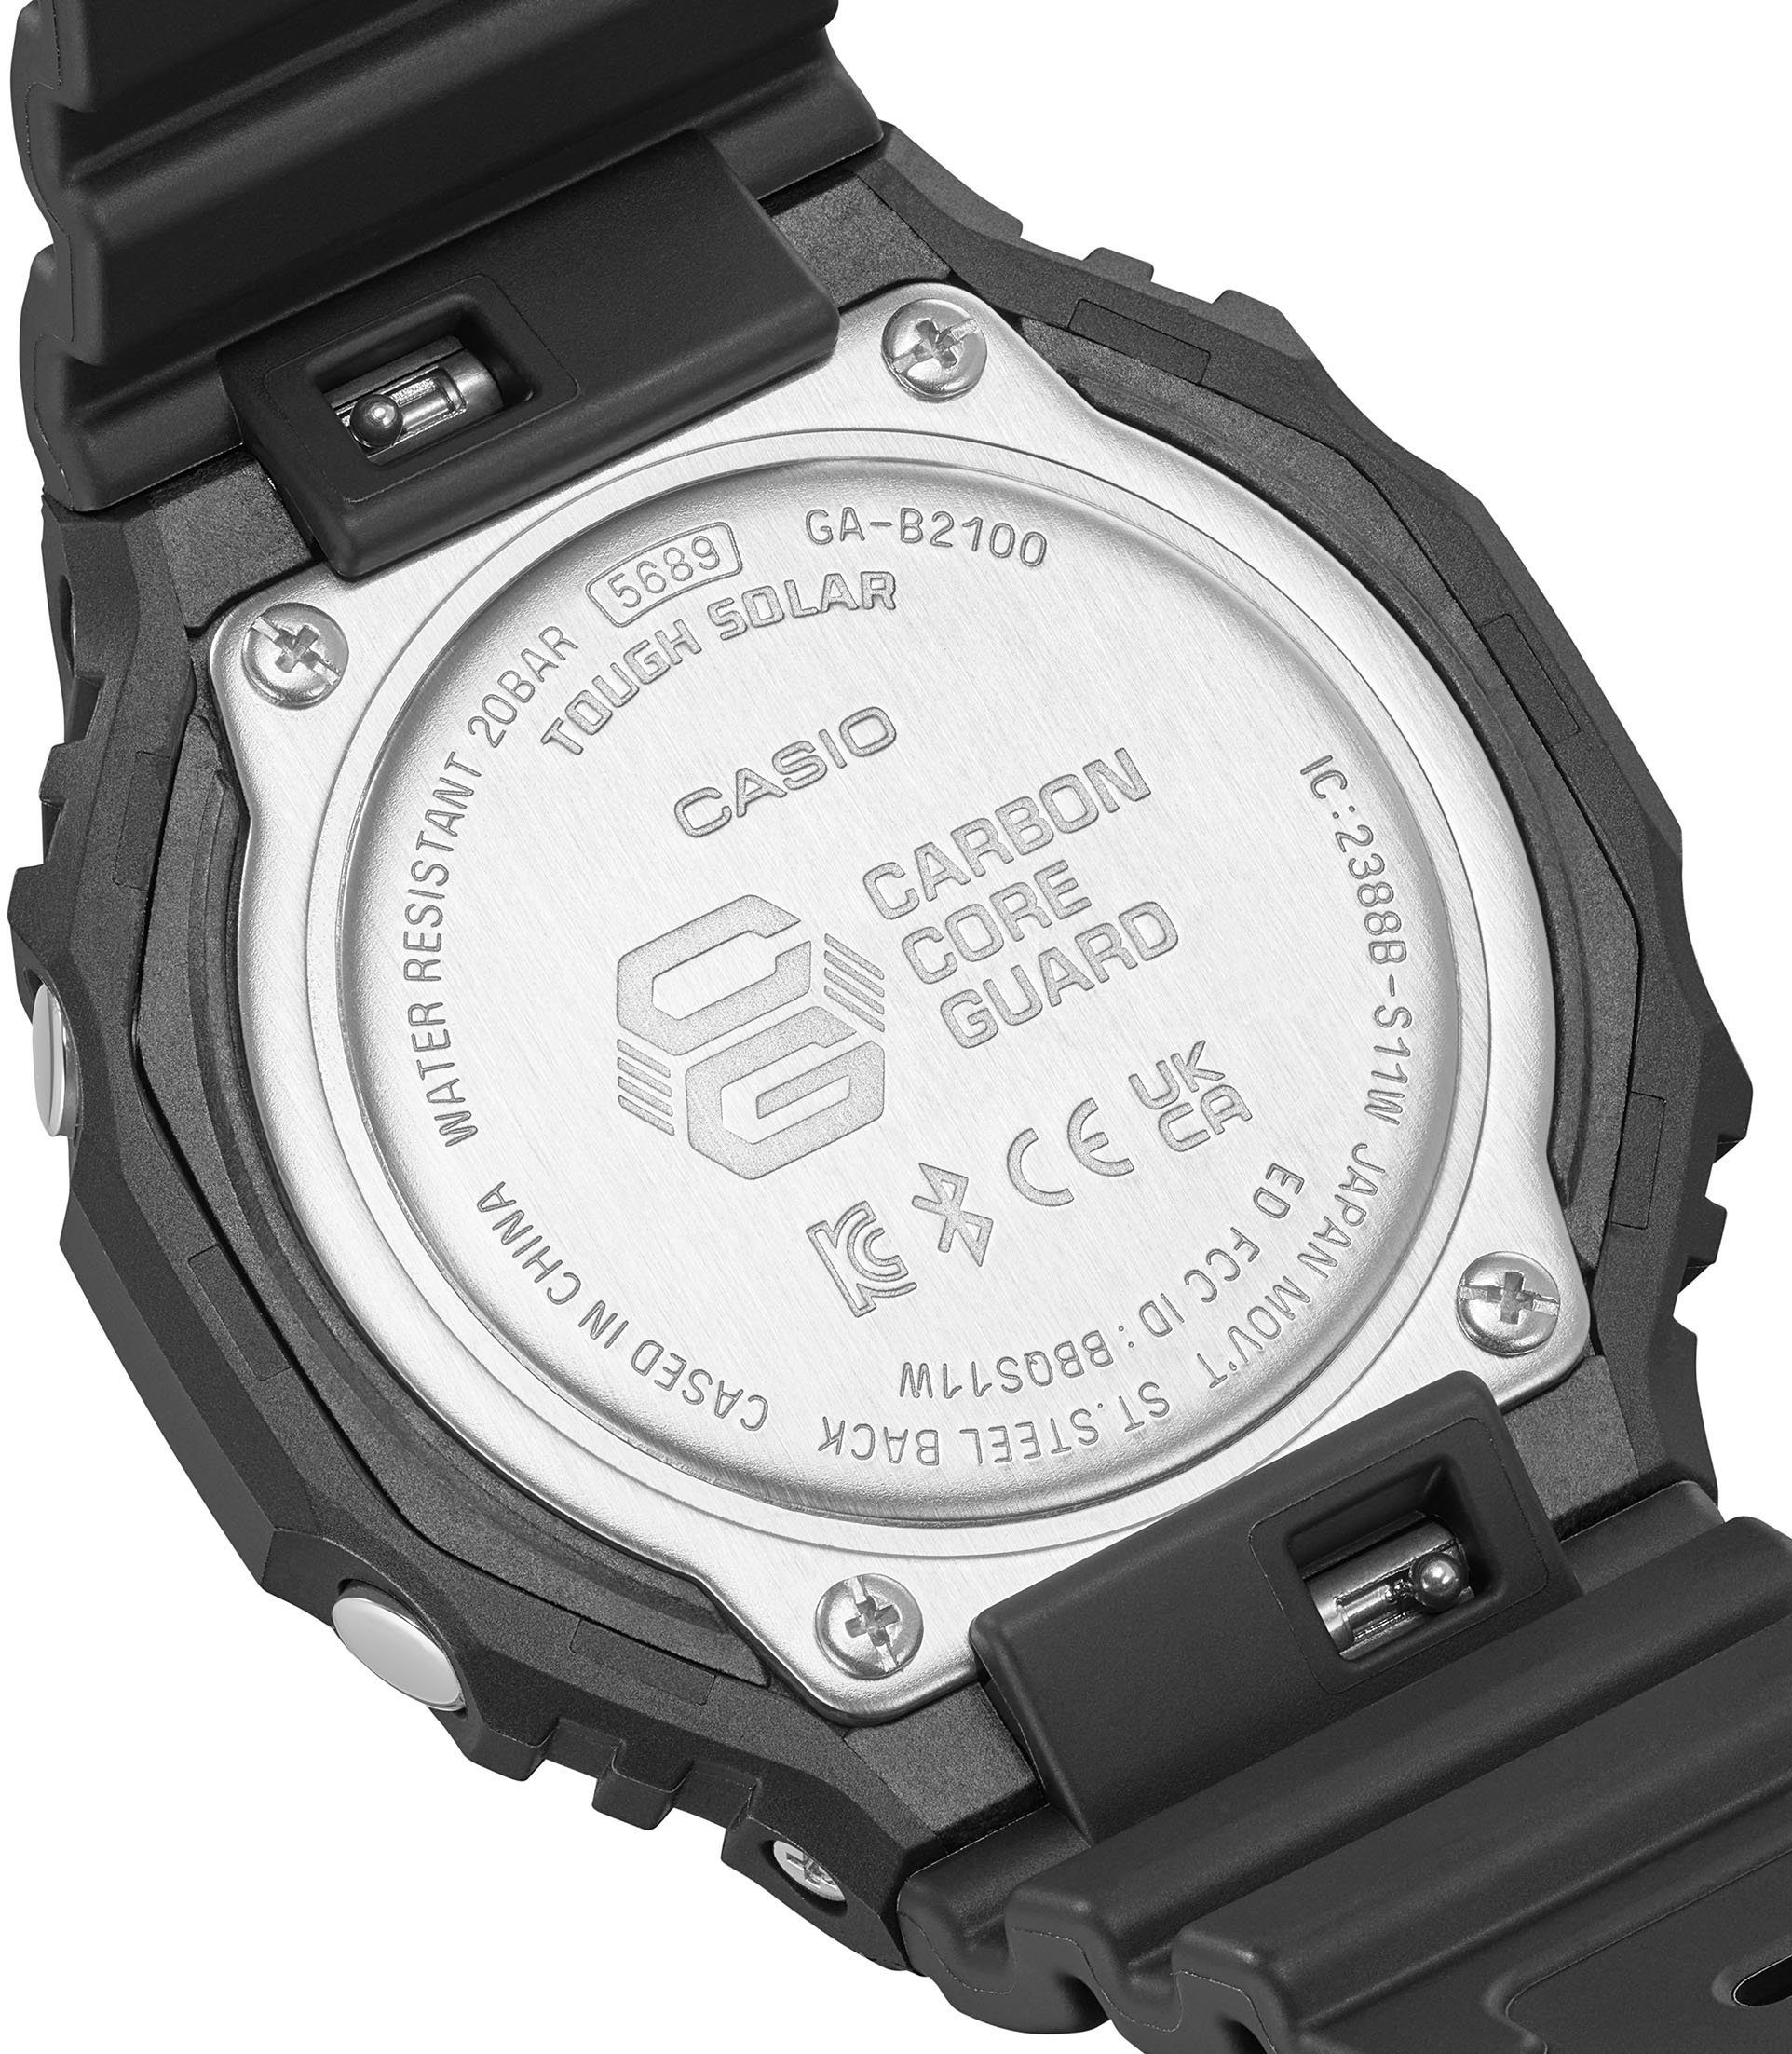 GA-B2100-1AER Smartwatch, CASIO G-SHOCK Solar